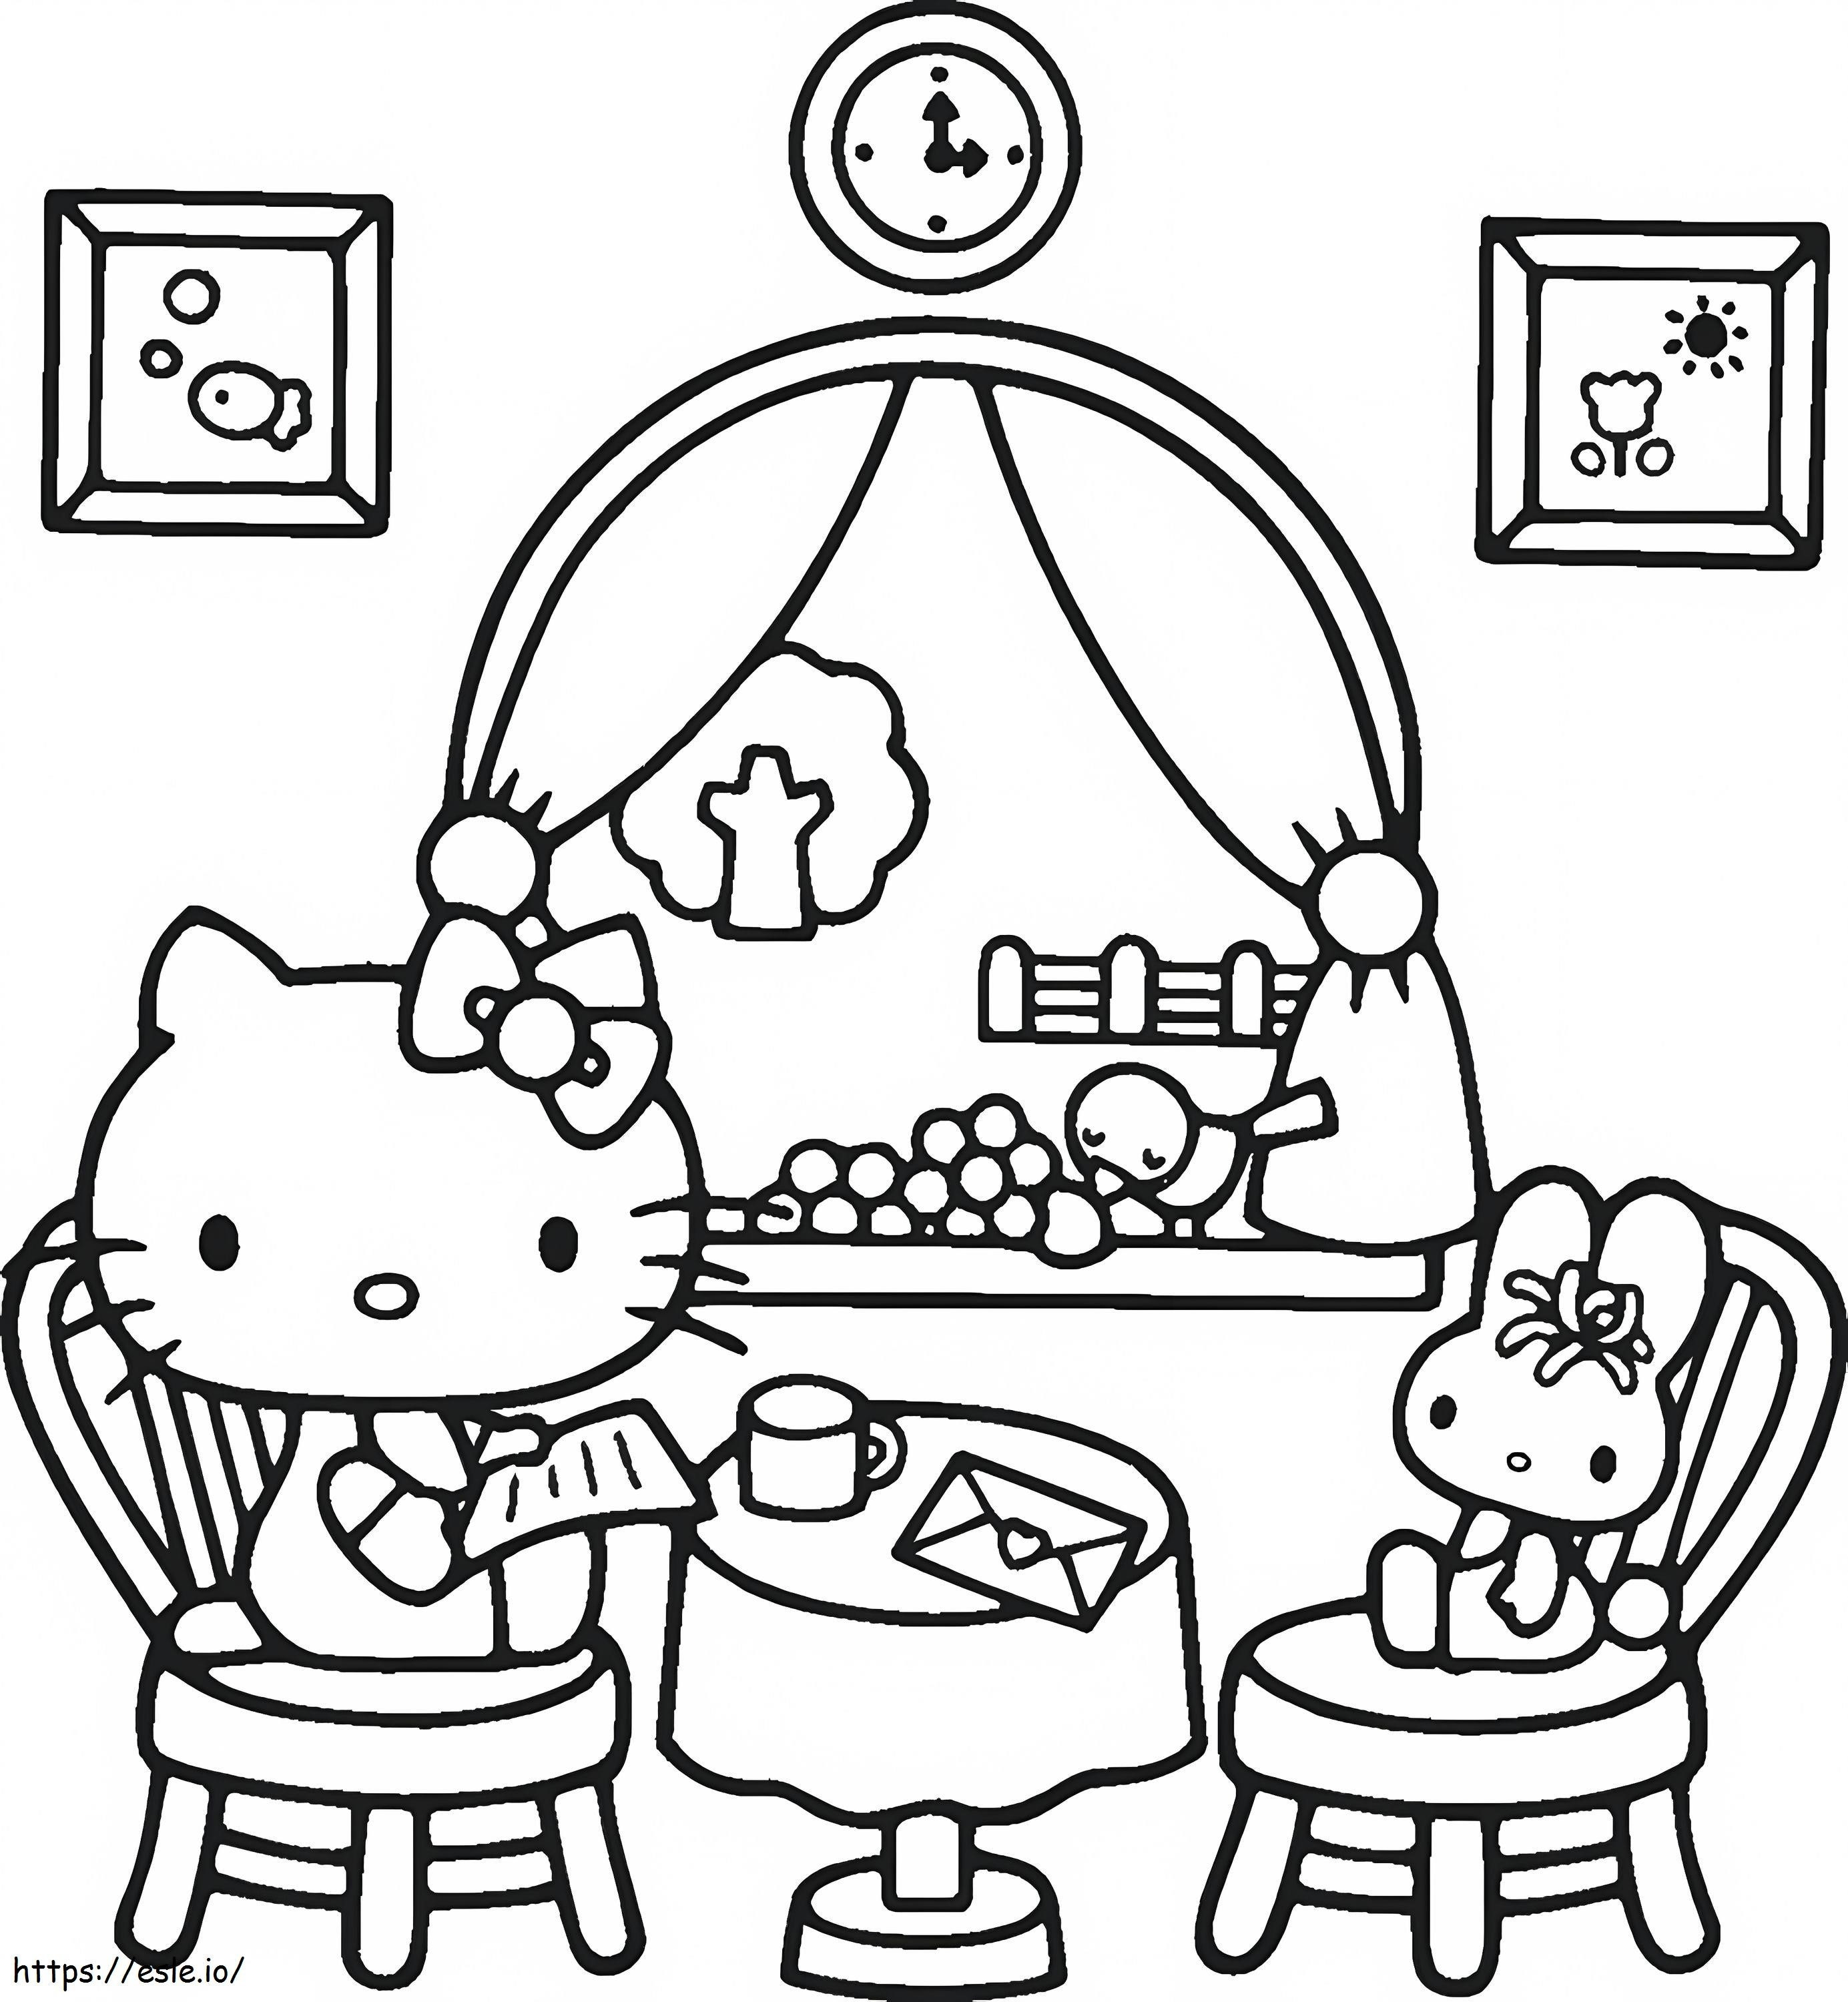 1539942005 Jak narysować Hello Kitty za darmo do pobrania kolorowanka